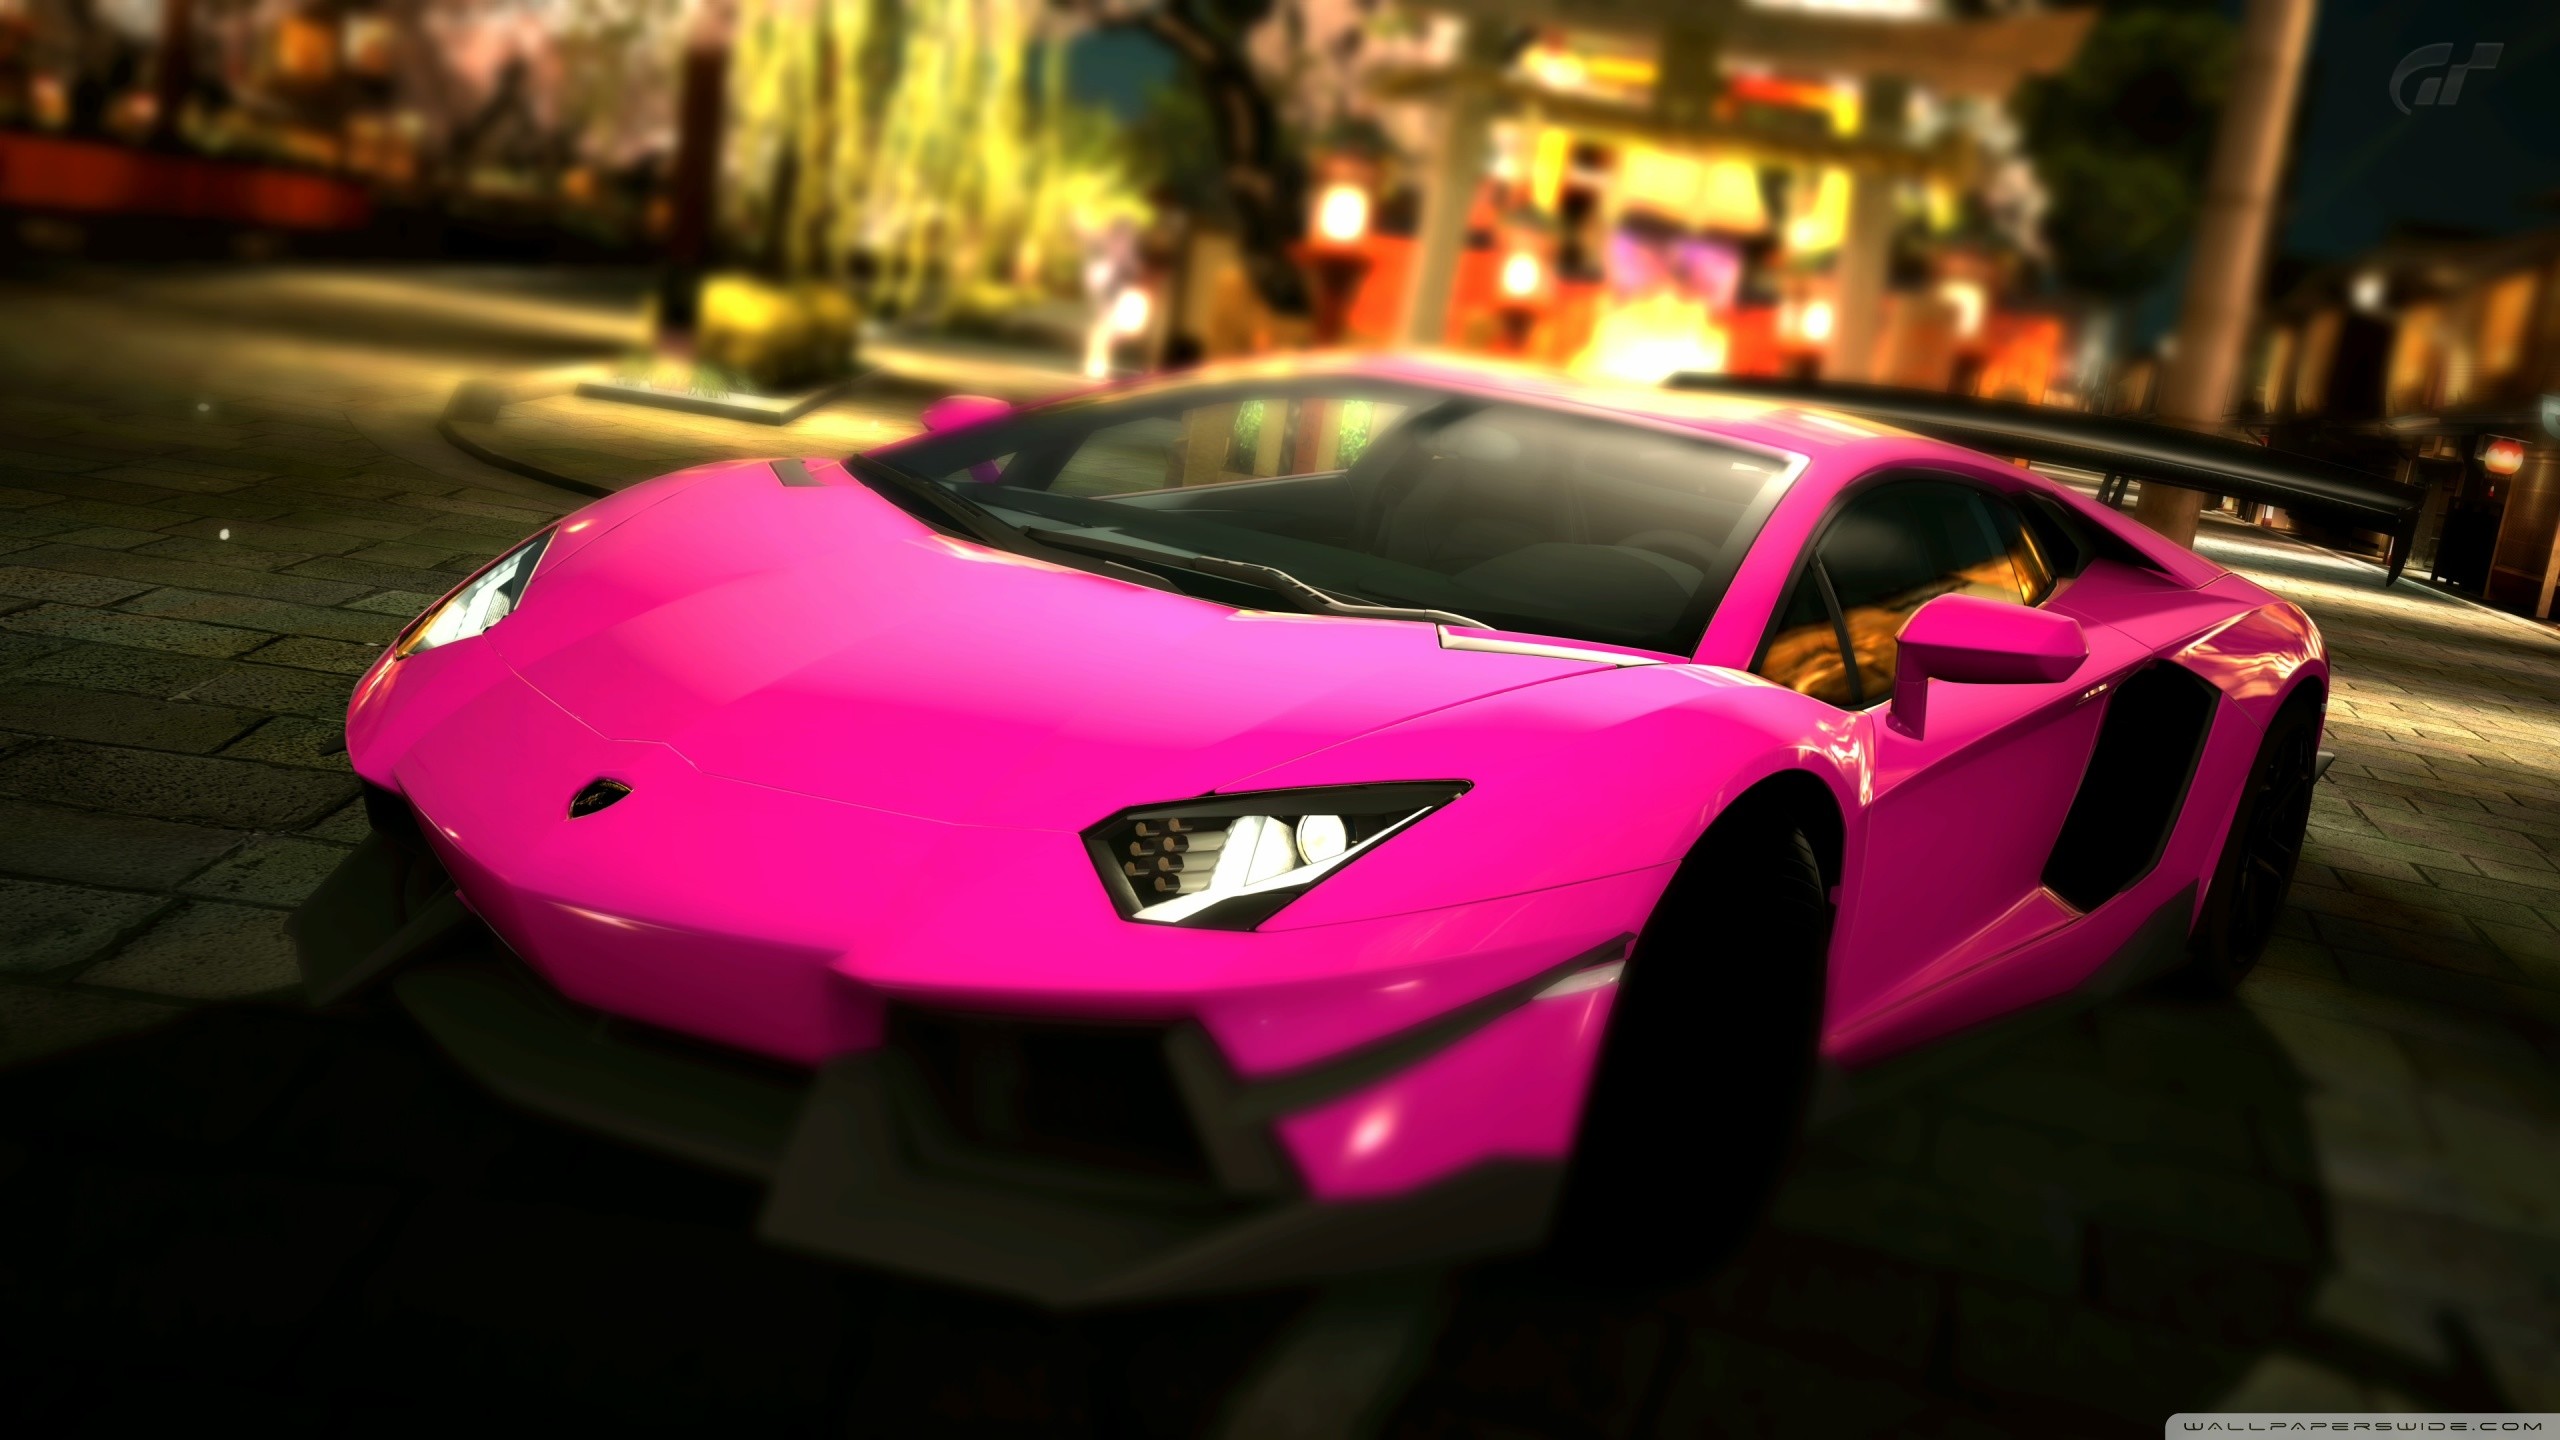 Pink Lamborghini Wallpaper Image